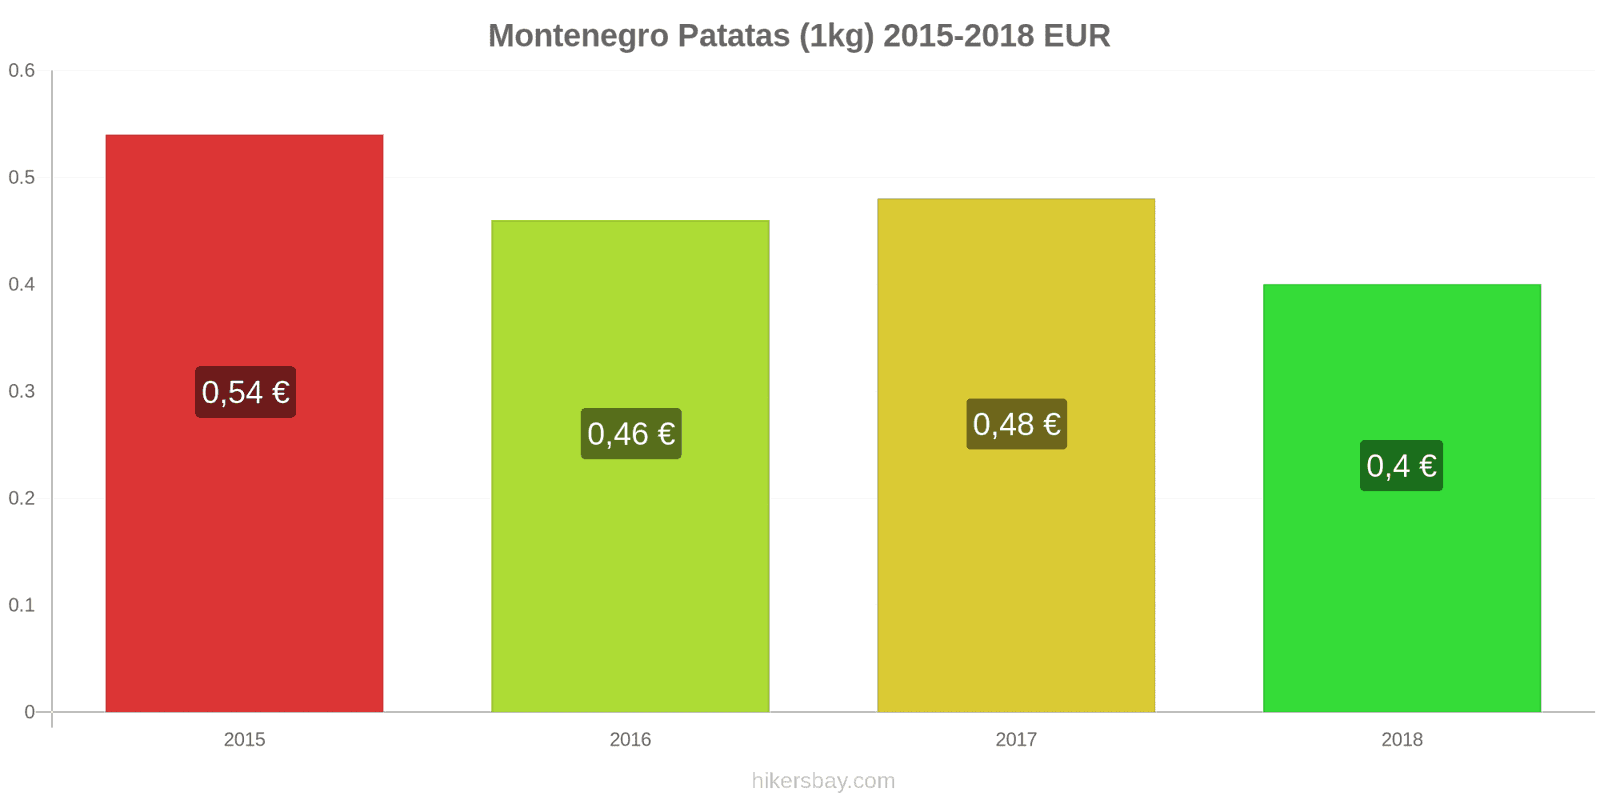 Montenegro cambios de precios Patatas (1kg) hikersbay.com